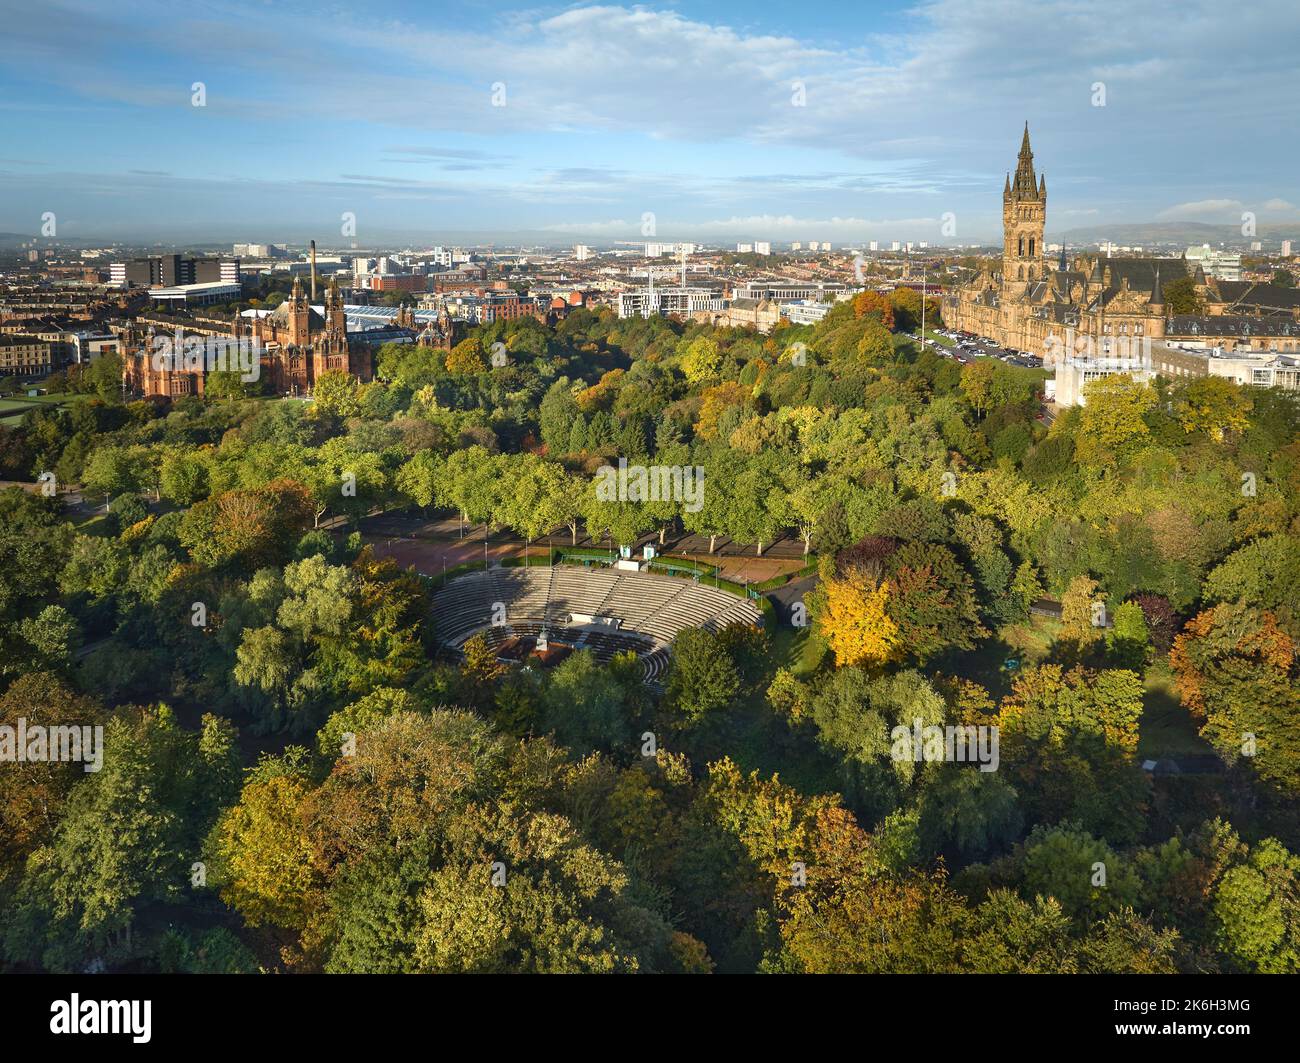 Vista aérea de la Universidad de Glasgow con el Bandstand en el Parque Kelvingrove en primer plano. Foto de stock